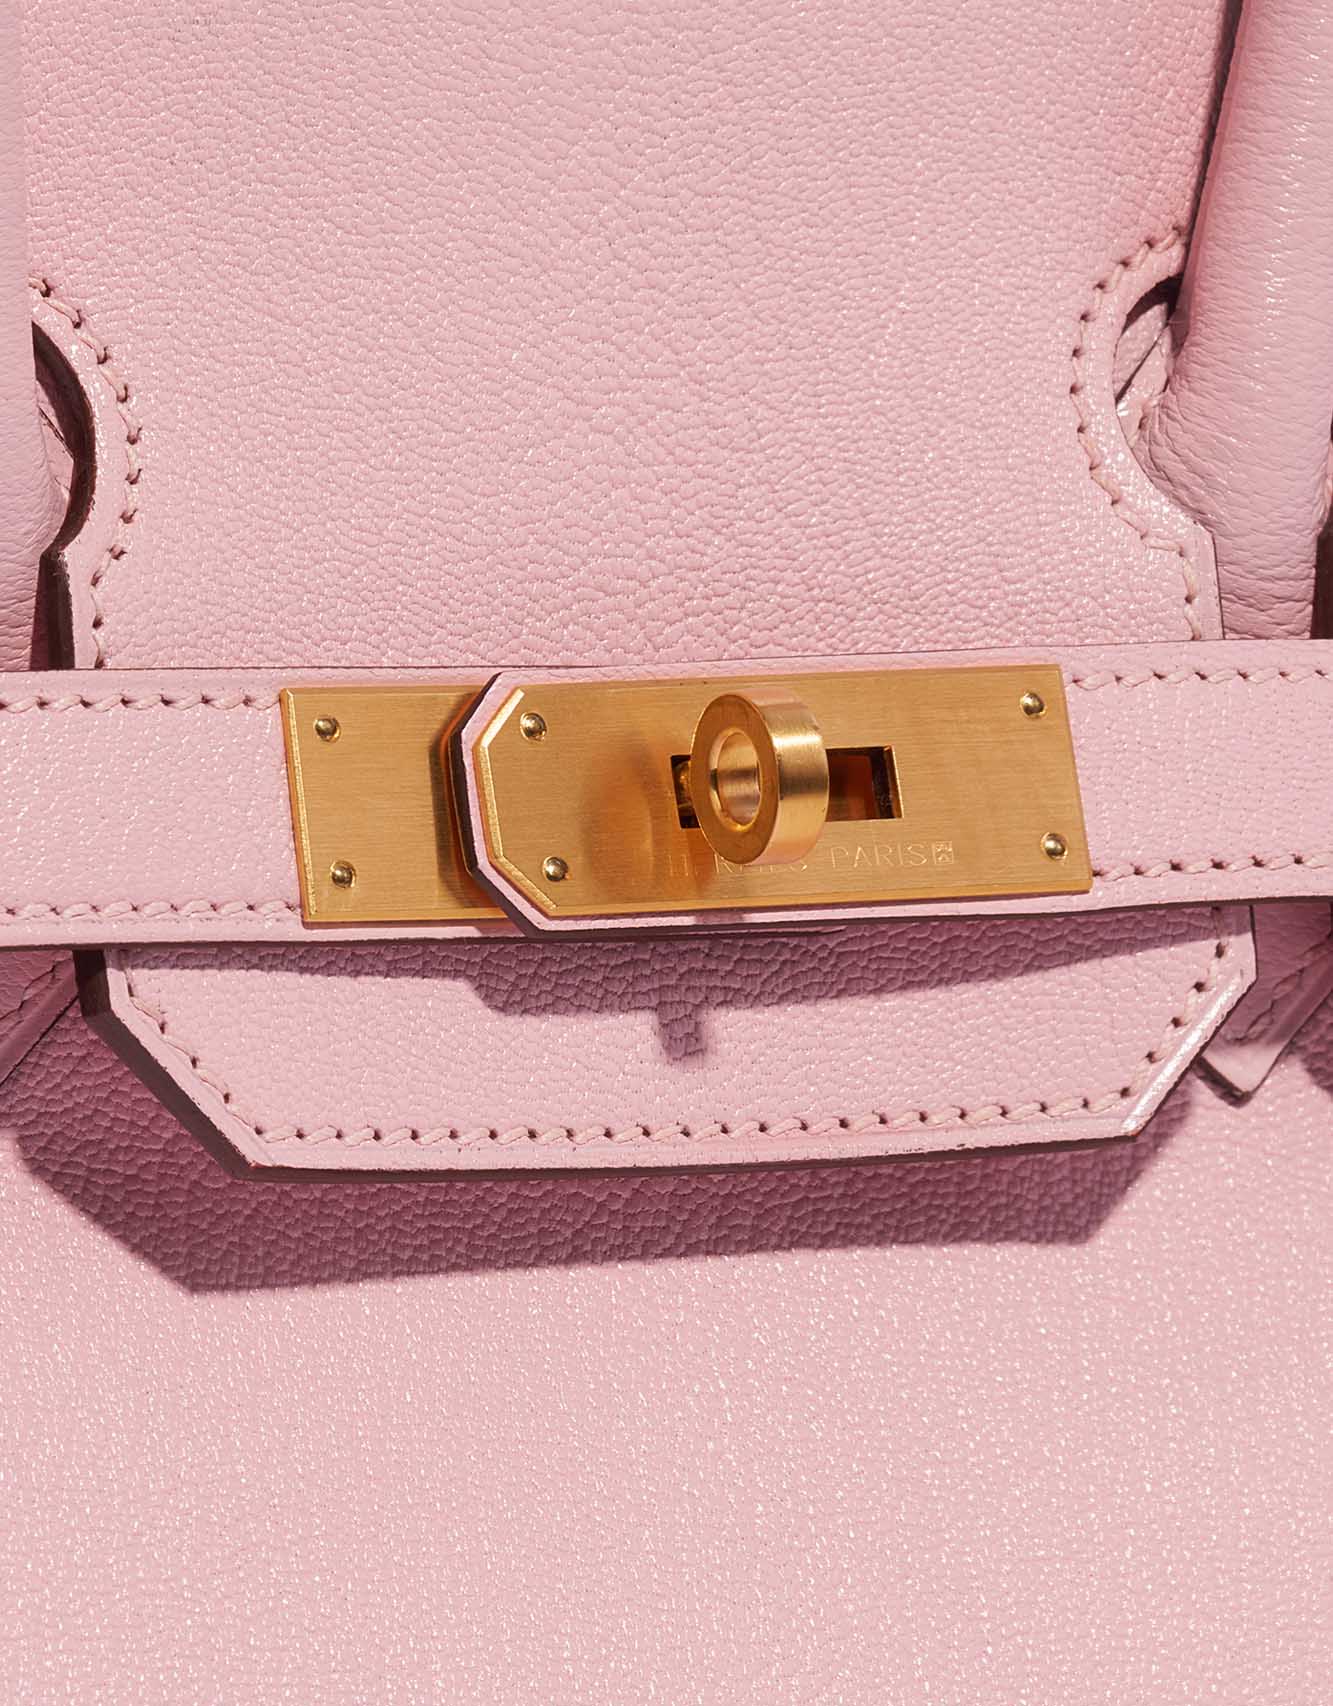 Pre-owned Hermès Tasche Birkin 30 Custom Made Chèvre Mysore Rose Sakura / Vermillion Pink, Rose Closing System | Verkaufen Sie Ihre Designer-Tasche auf Saclab.com